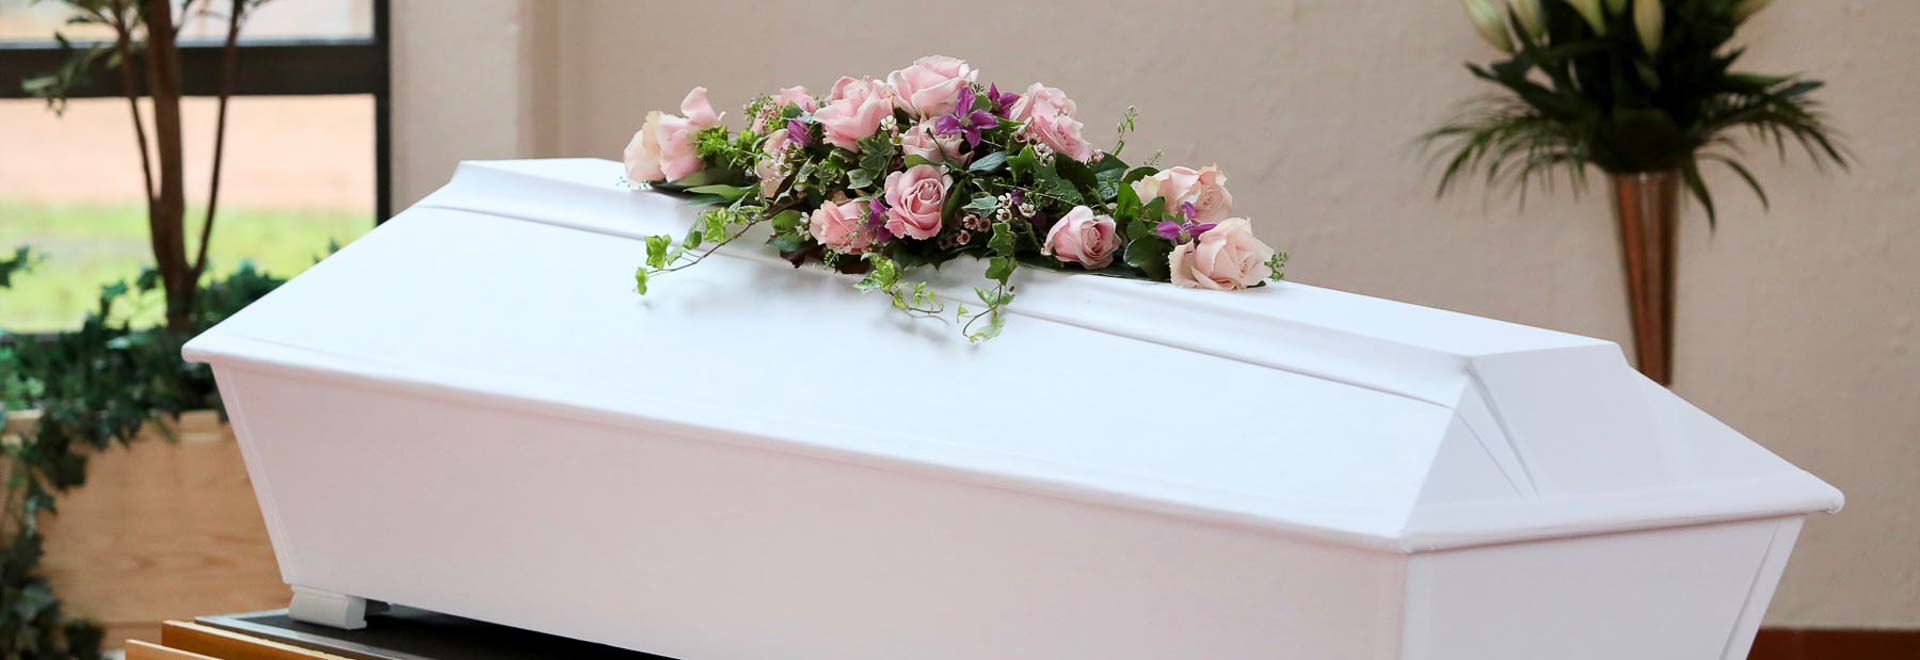 Mitä hautajaisissa tapahtuu? Lue infopakettimme hautajaisiin osallistuvalle.